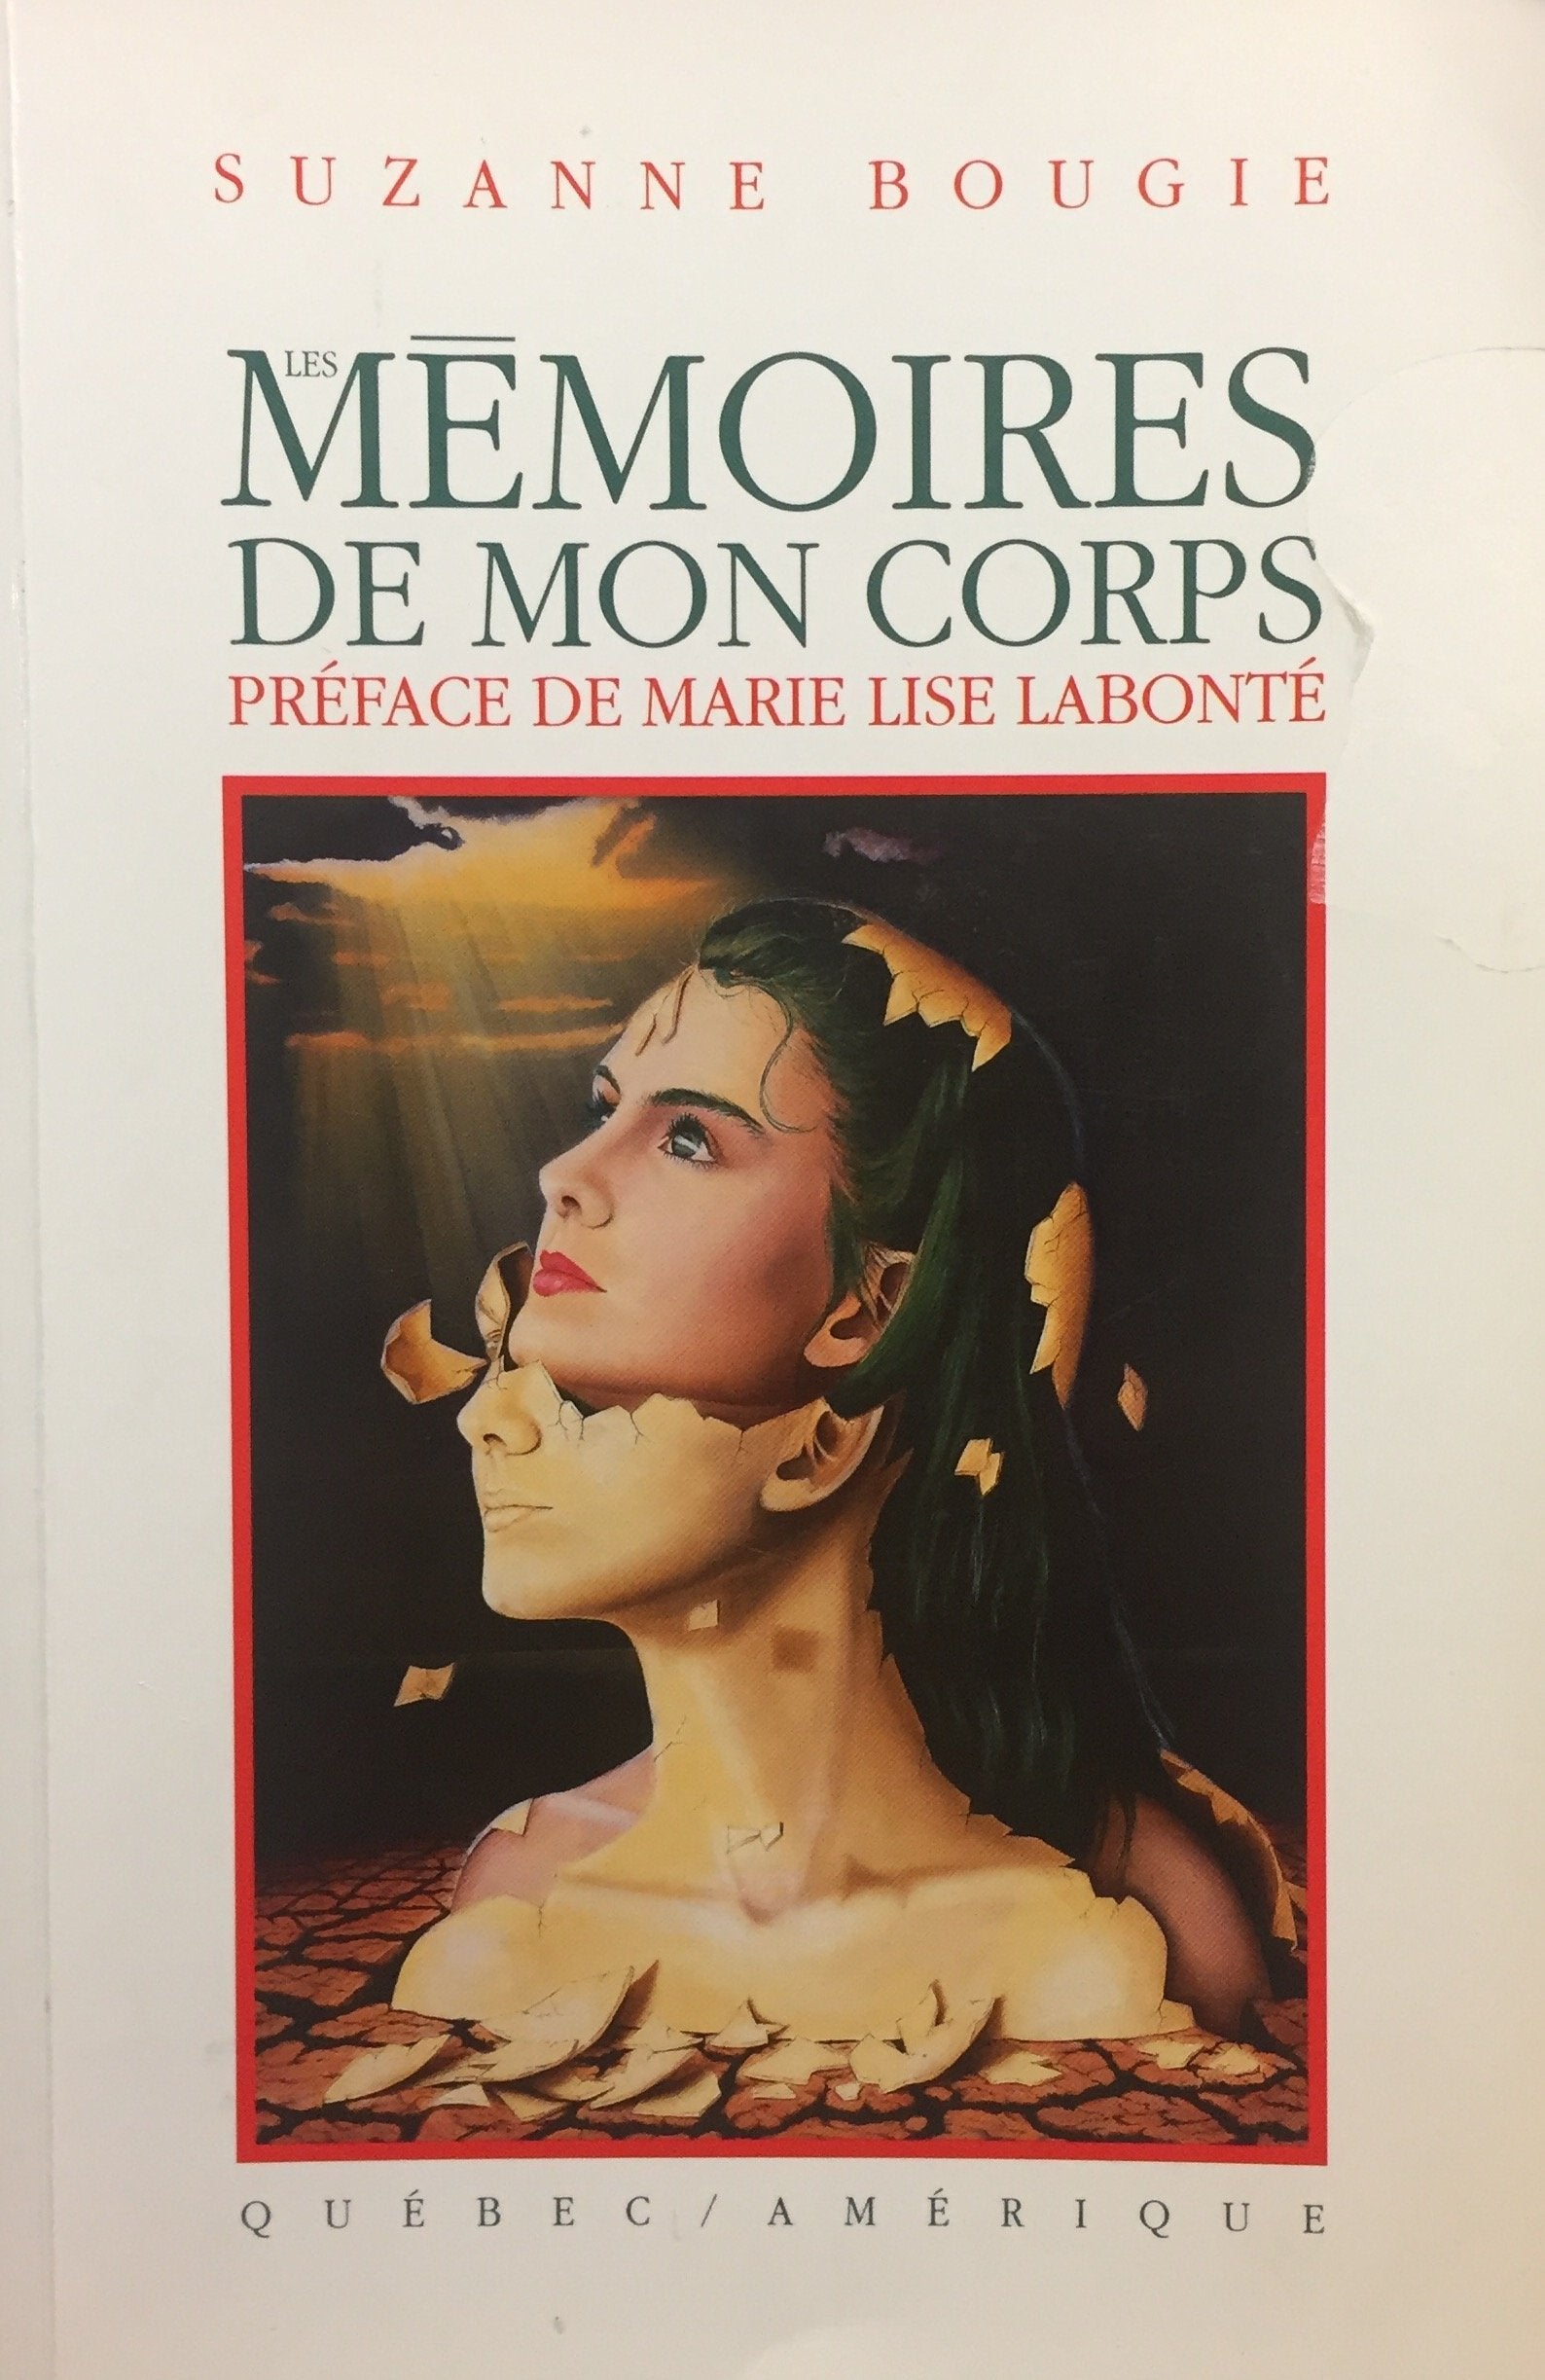 Livre ISBN 2890374513 Les mémoires de mon corps (Suzanne Bougie)